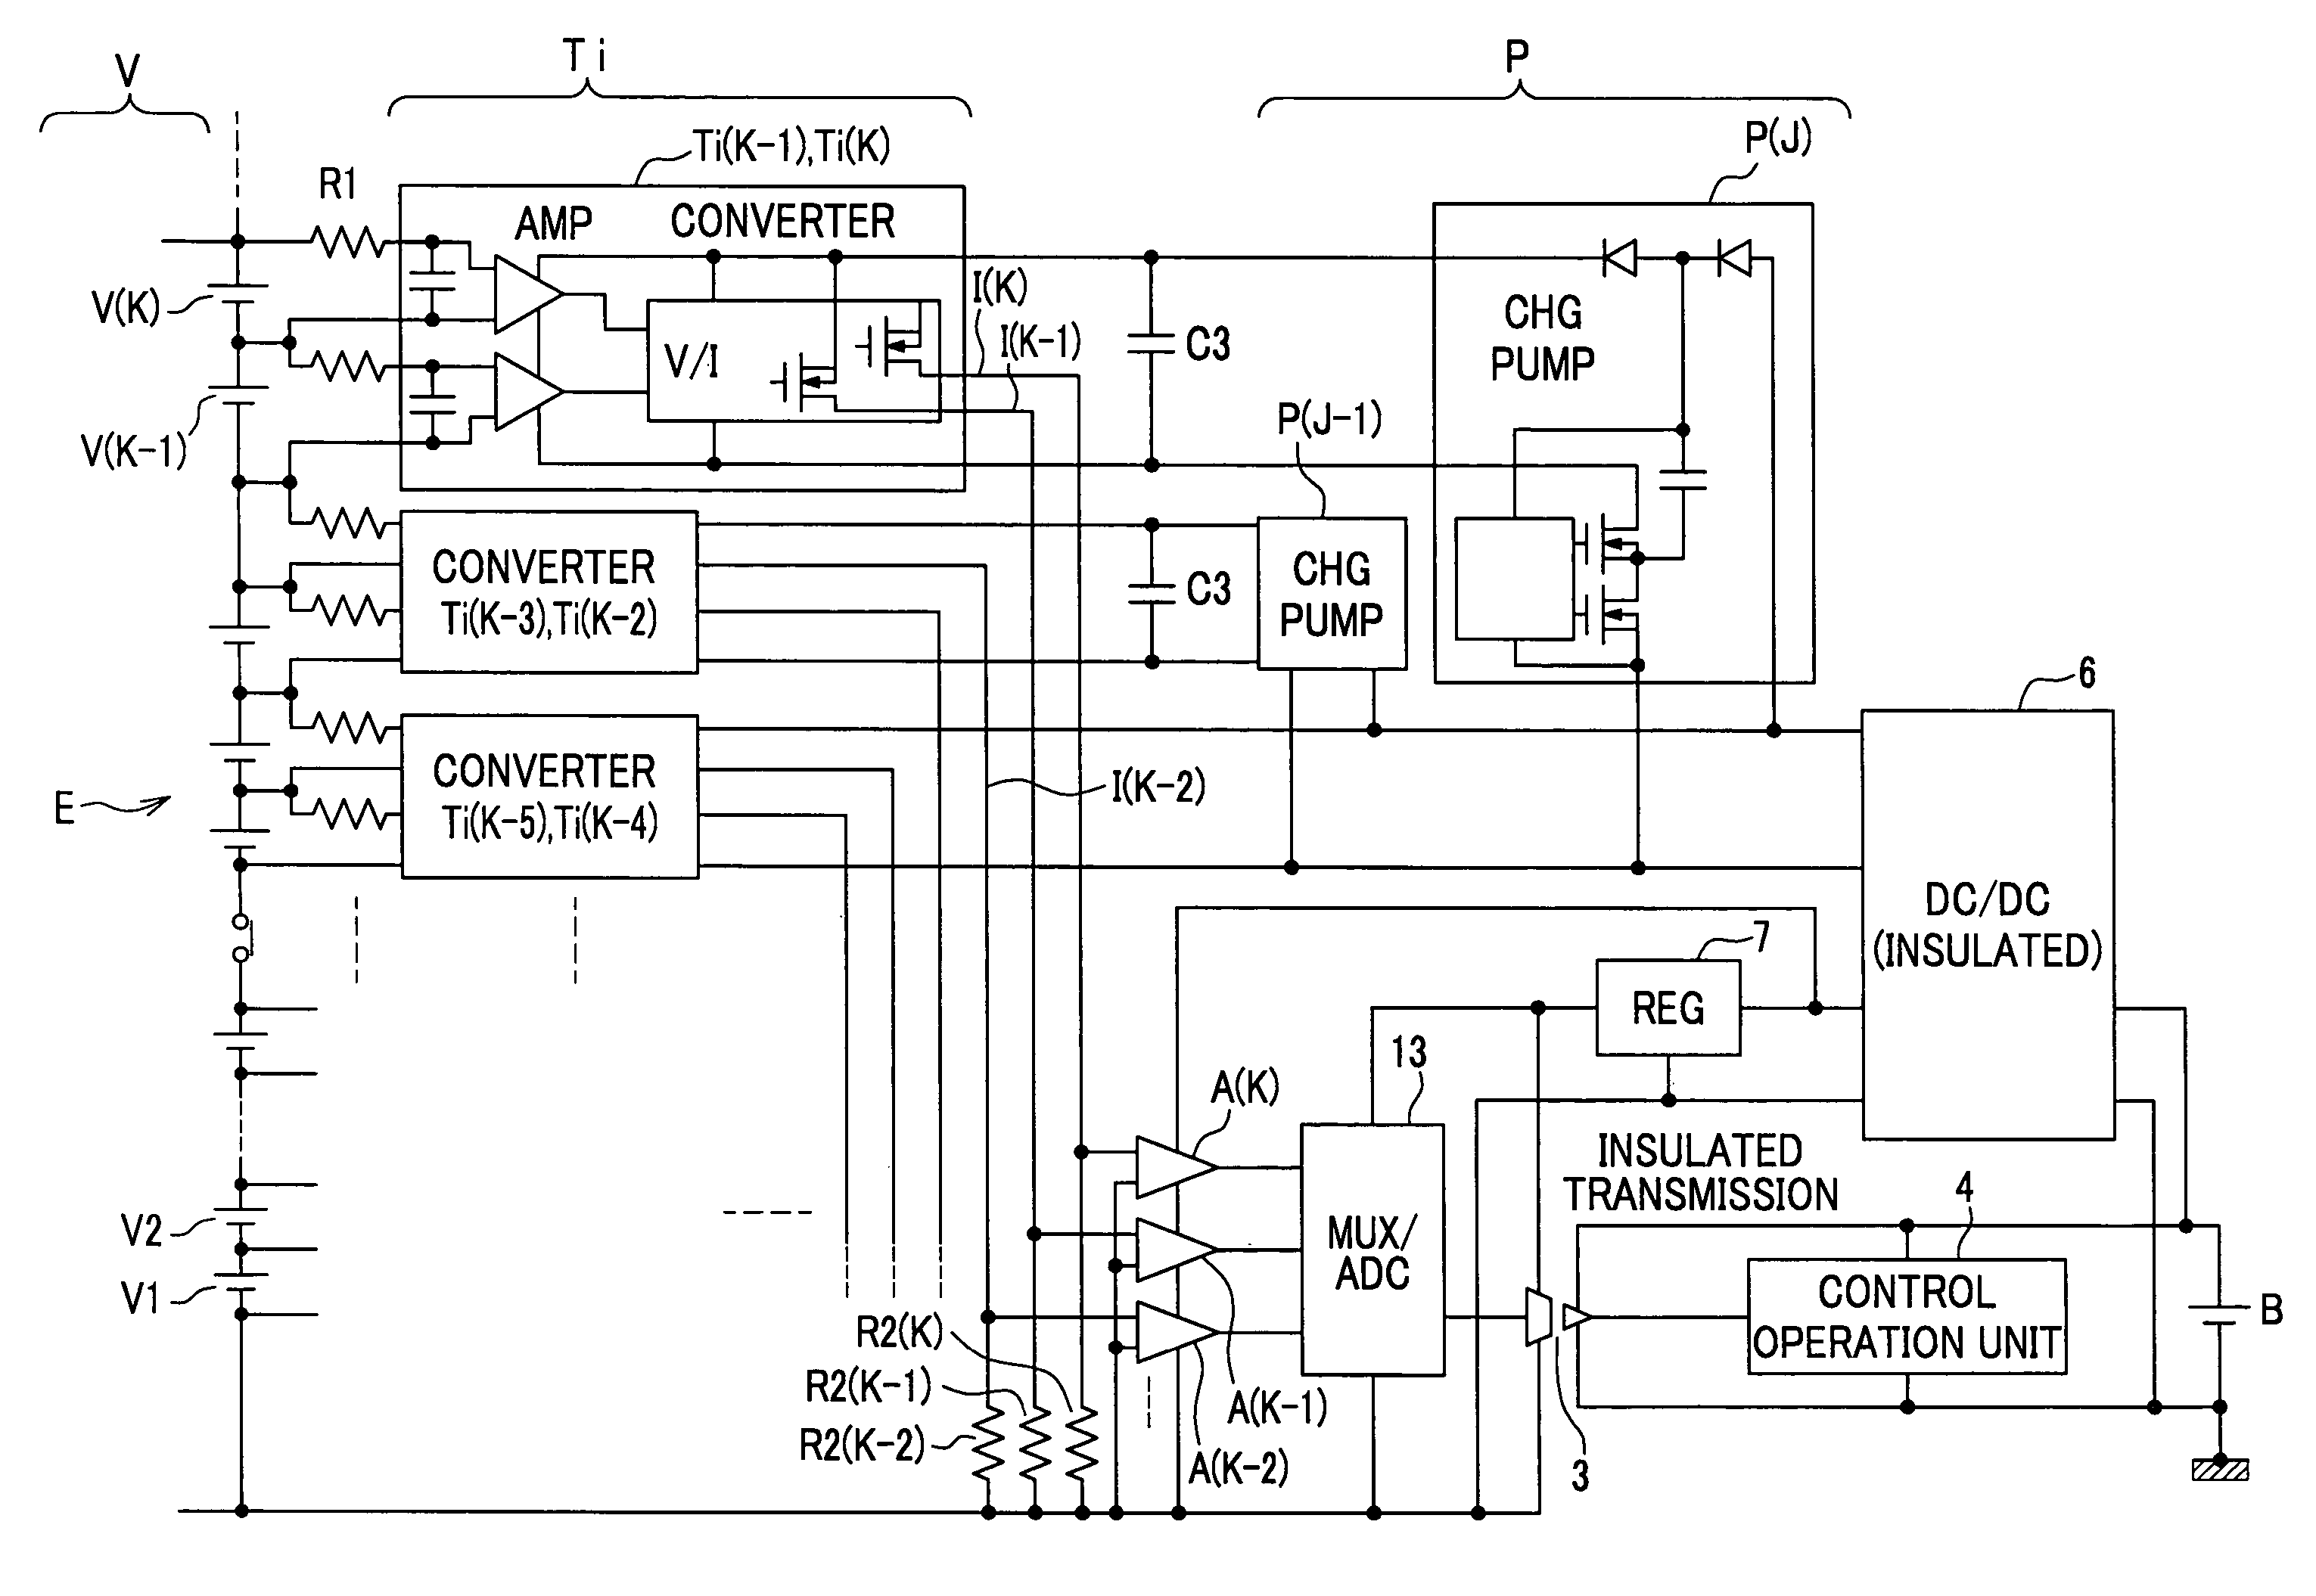 Battery voltage measurement circuit, battery voltage measurement method, and battery electric control unit